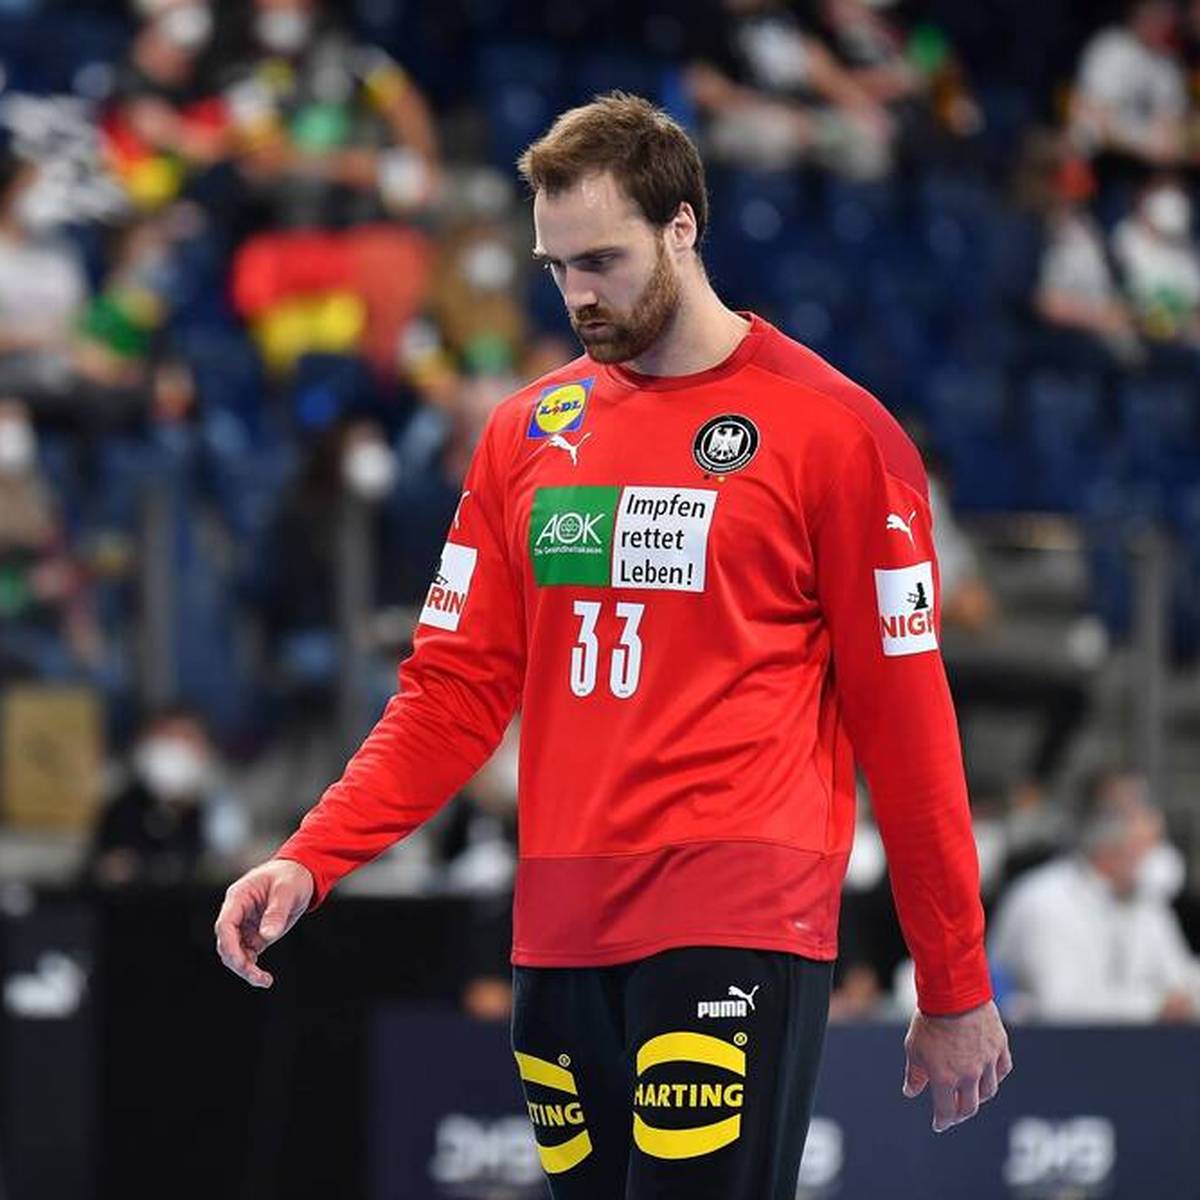 "Schwierige sportliche Phase": Handball-EM ohne Wolff?